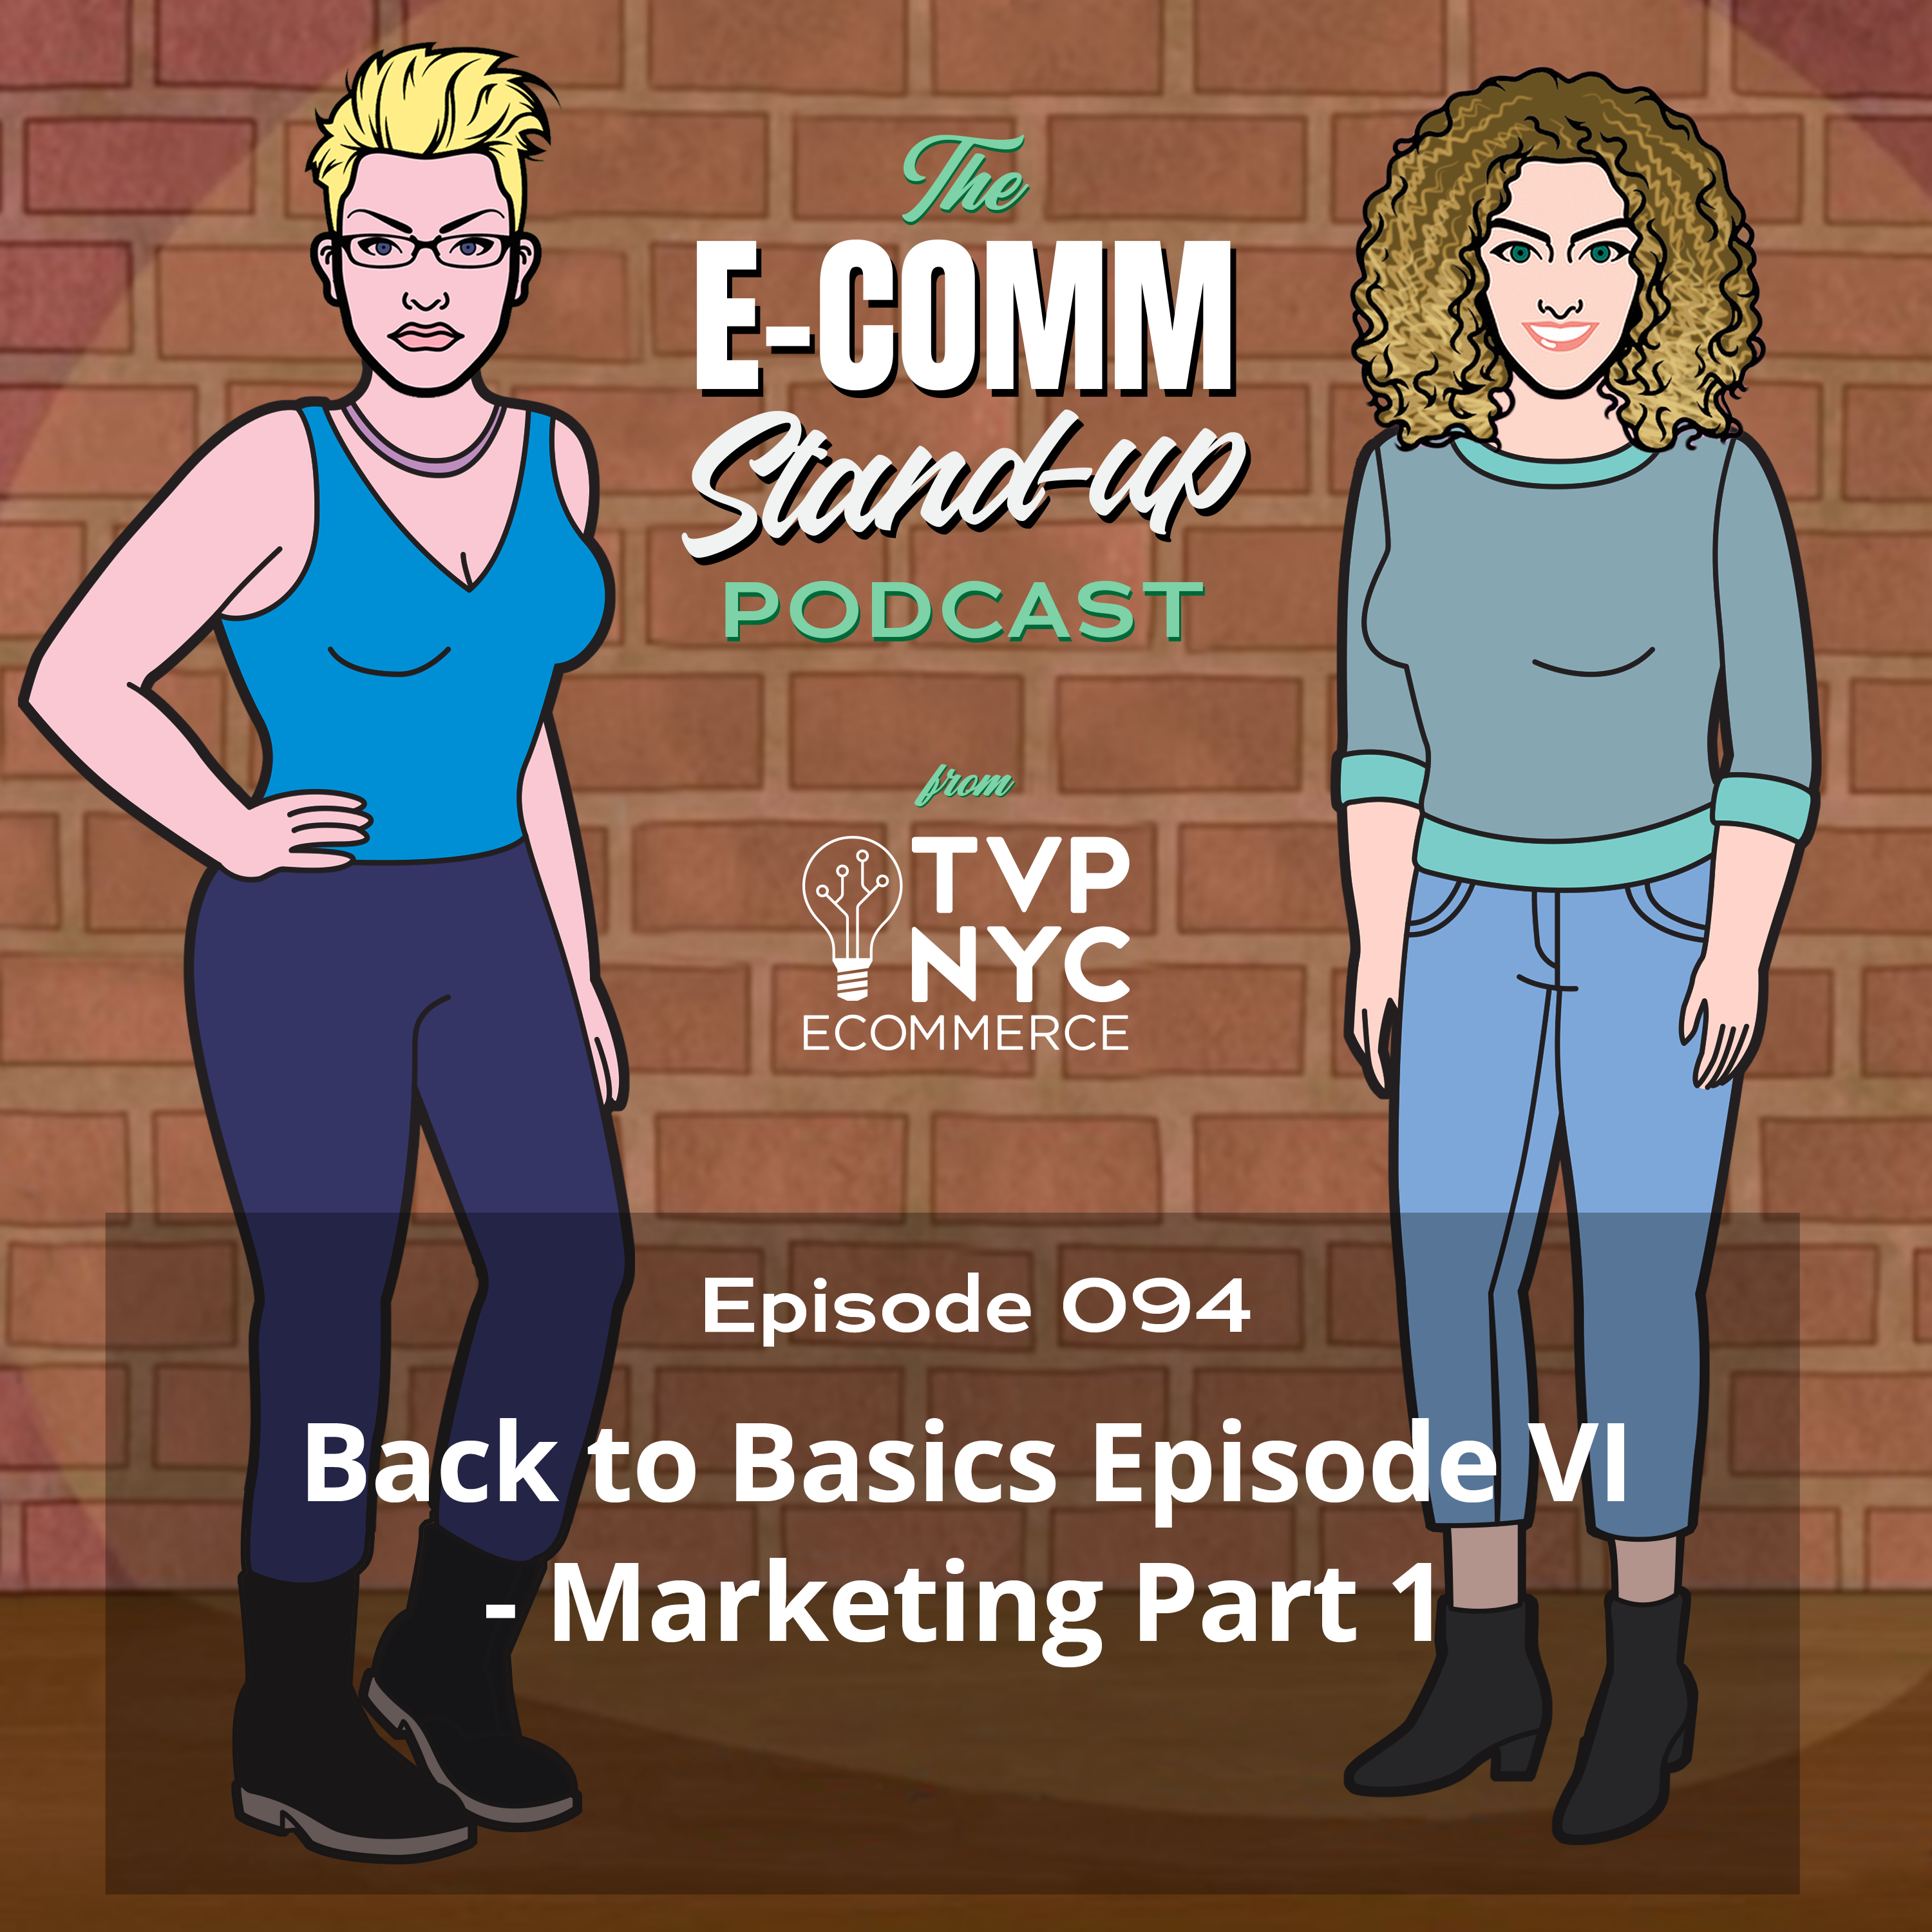 Back to Basics Episode VI- Marketing Part 1